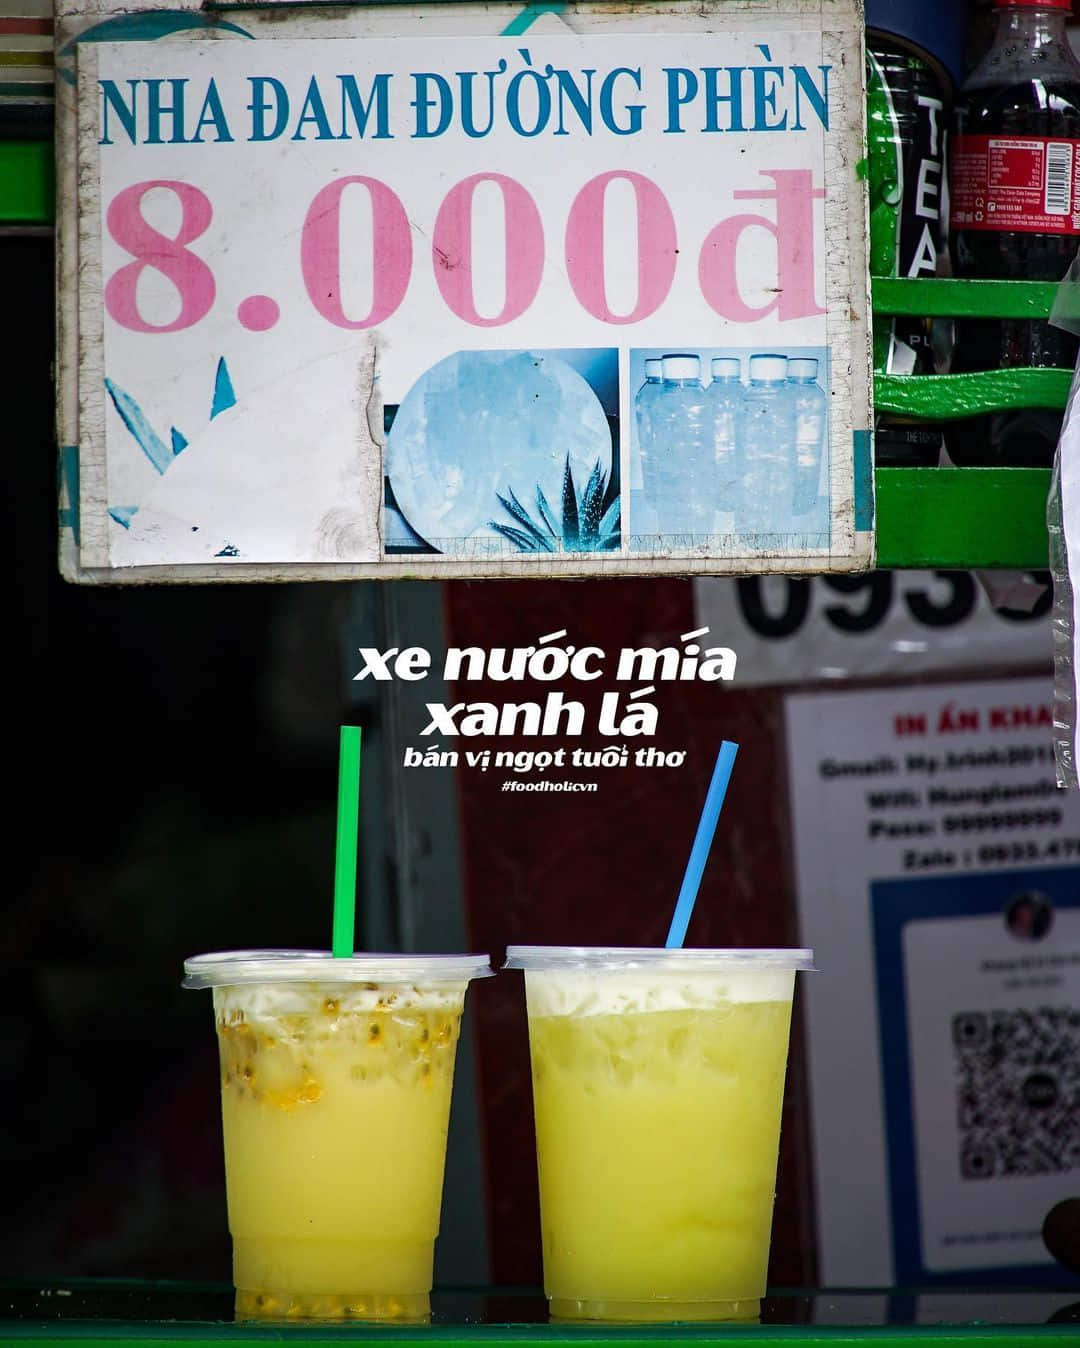 Ra mắt sản phẩm nước mía đóng lon đầu tiên tại Việt Nam  Thông tin doanh  nghiệp